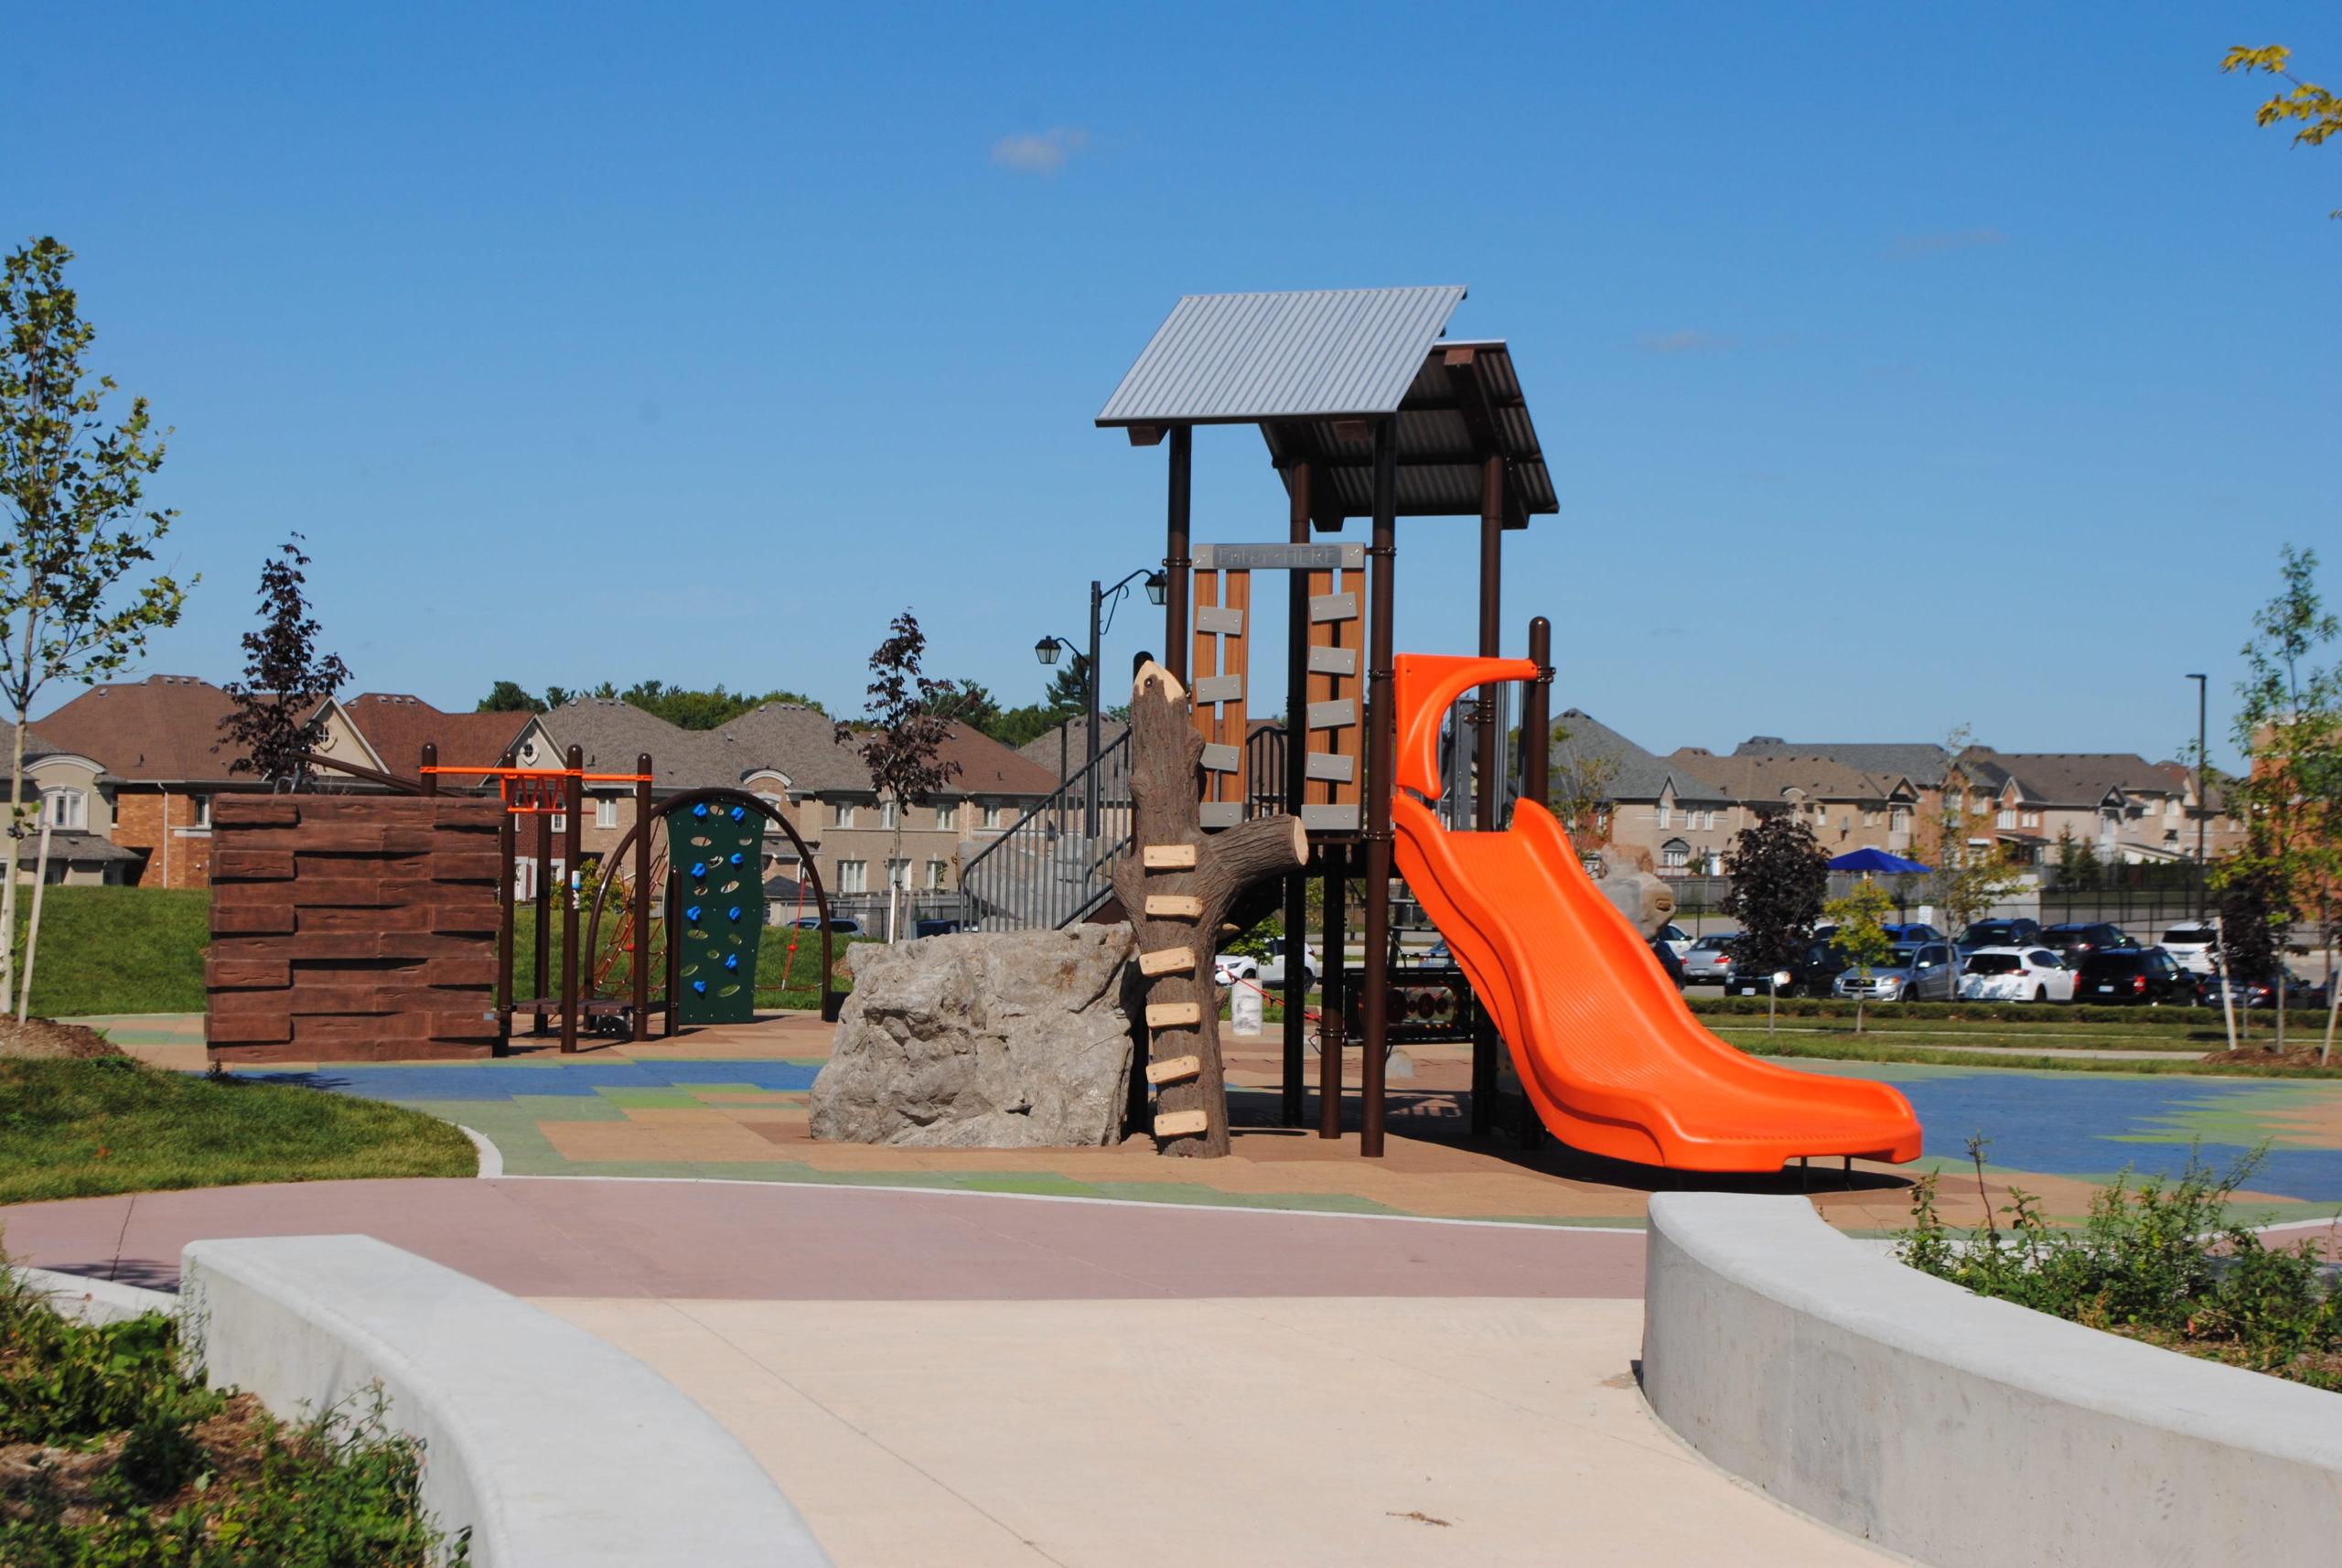 Children's playground with bright orange slide